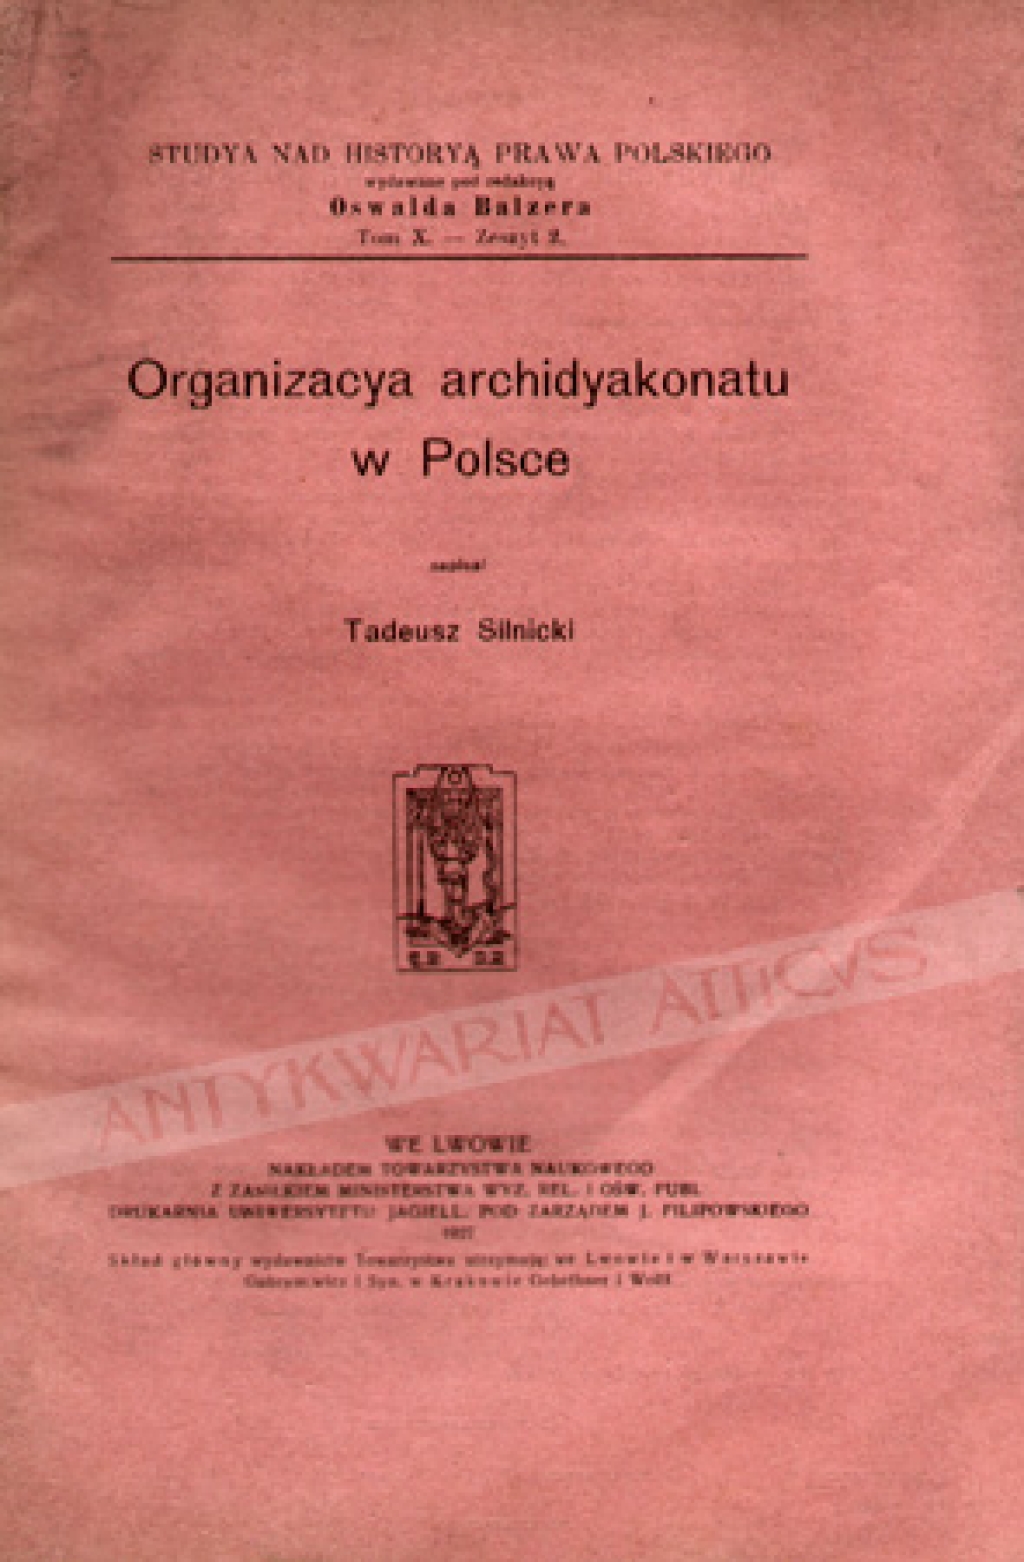 Organizacya archidyakonatu w Polsce